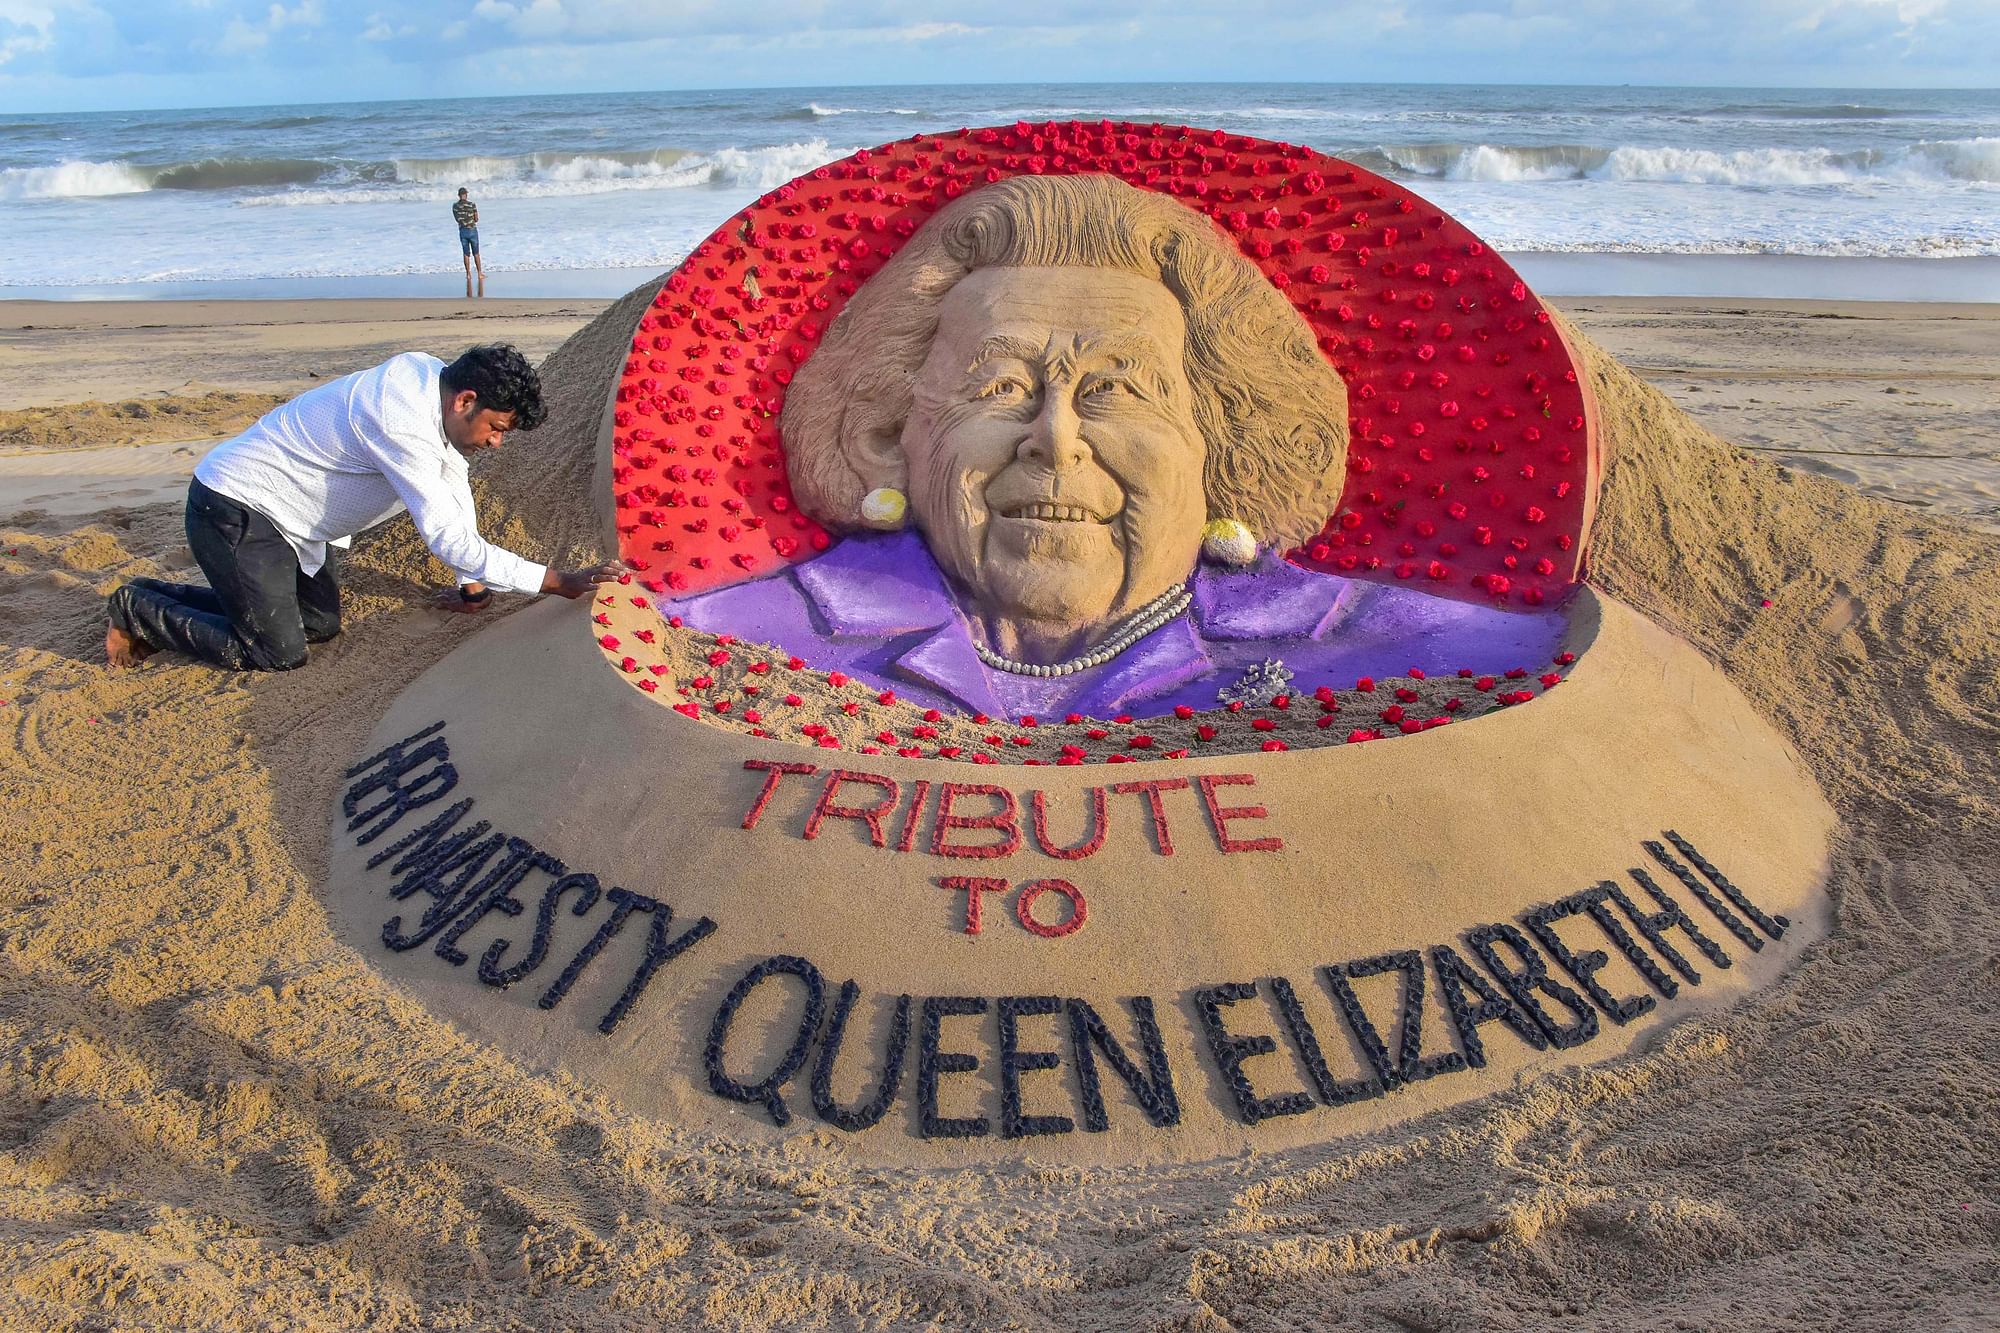 <div class="paragraphs"><p>Queen Elizabeth II: सुदर्शन पटनायक द्वारा बनाई गई महारानी एलिजाबेथ द्वितीय की एक रेत की मूर्ति</p></div>